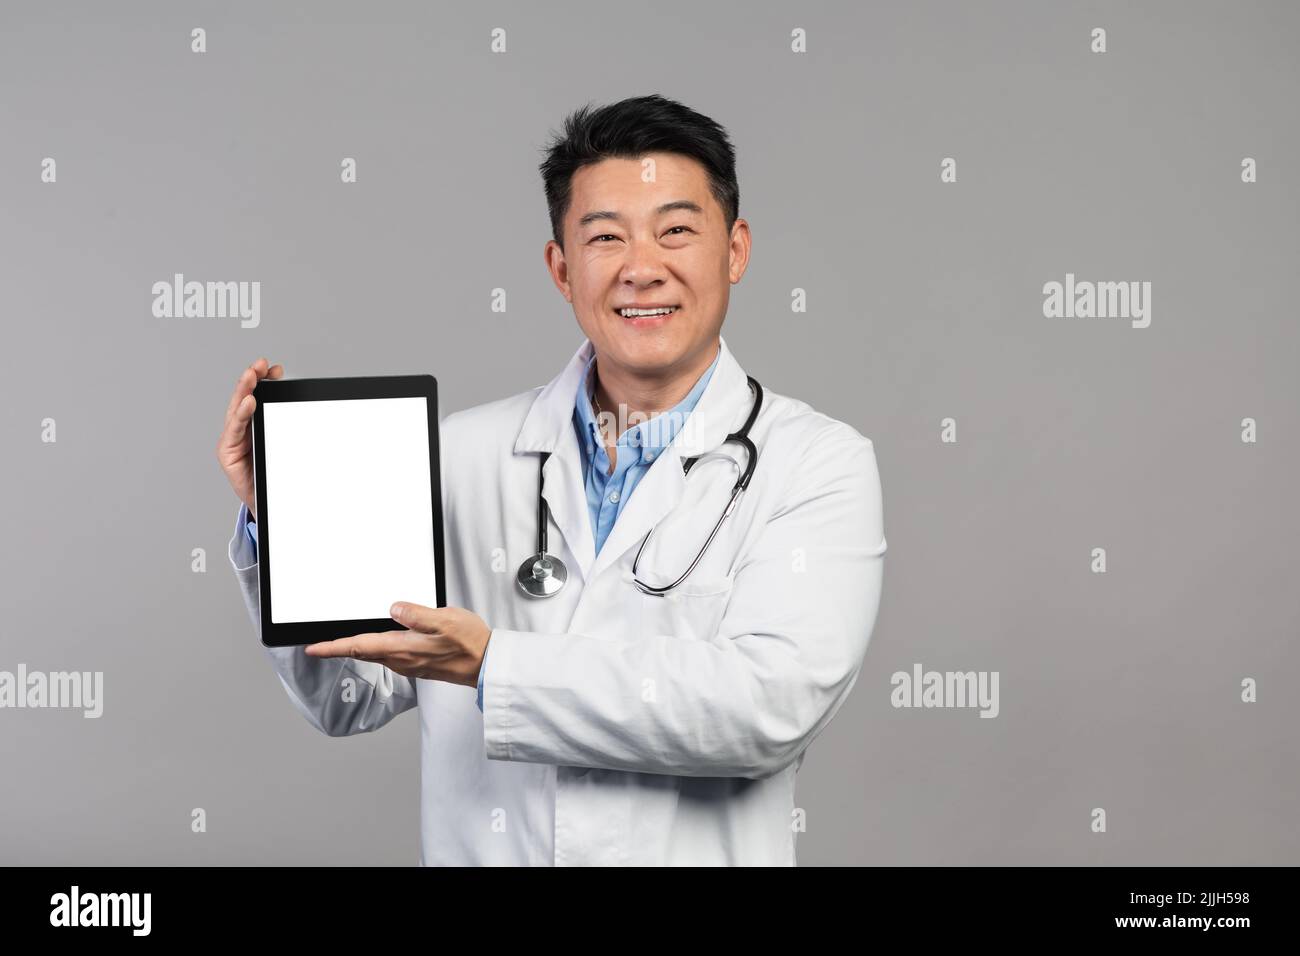 Sourire mature médecin chinois en manteau blanc avec stéthoscope montrant un comprimé avec écran blanc Banque D'Images